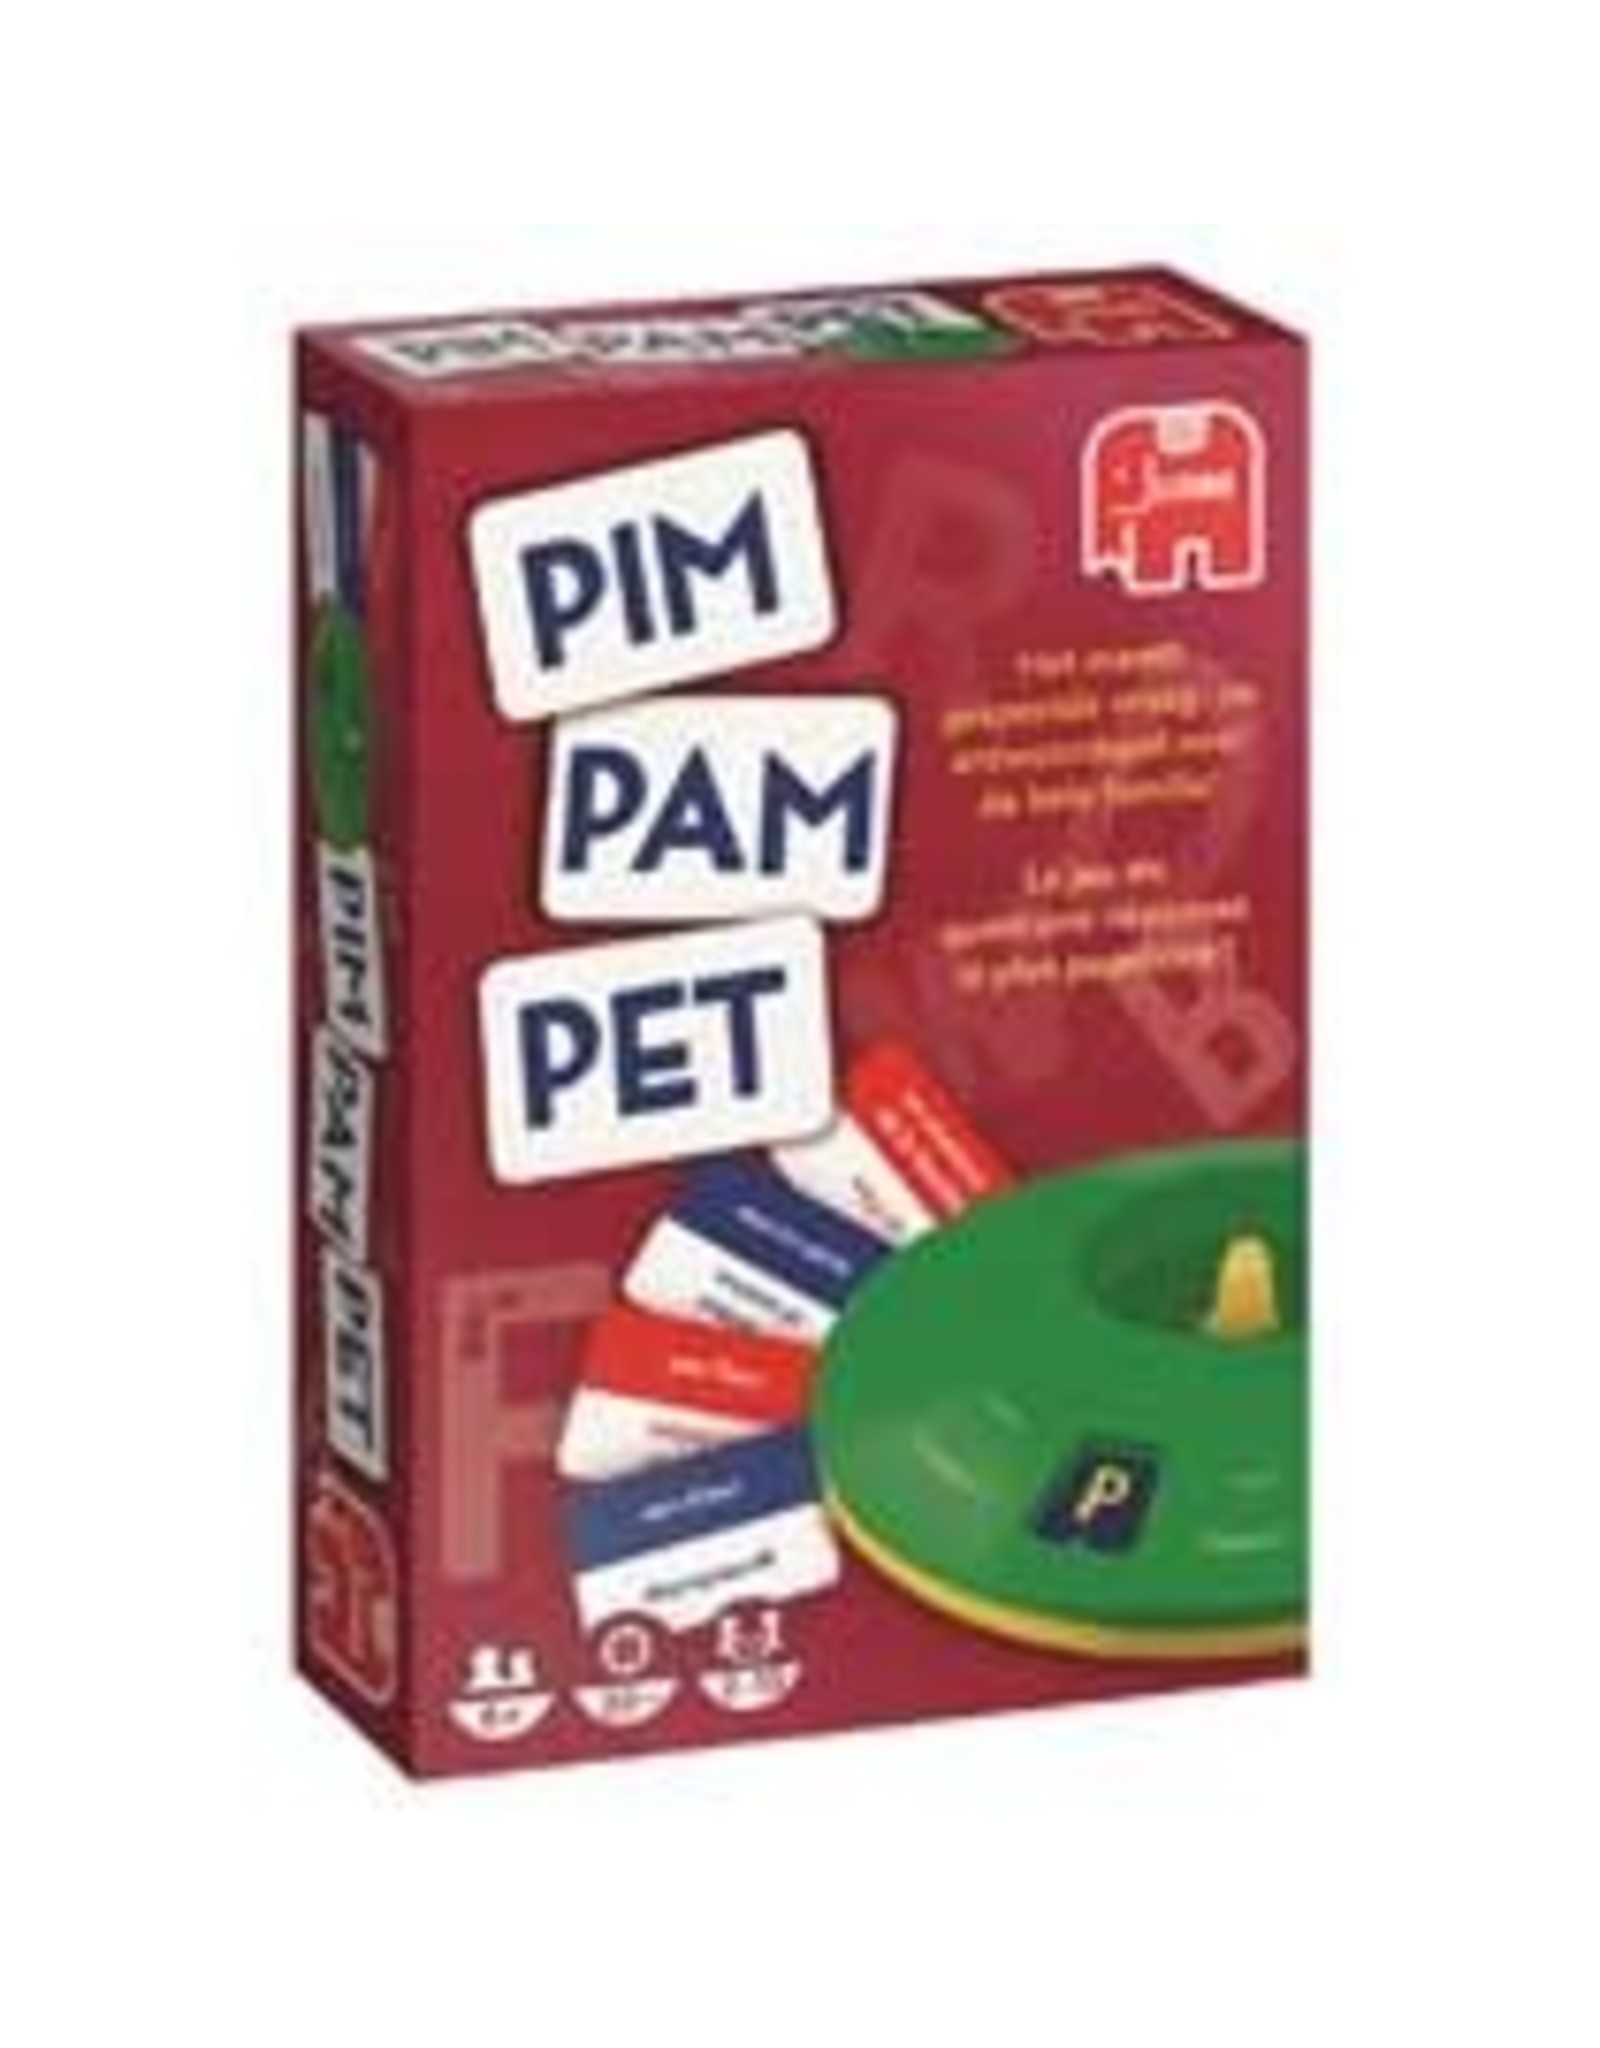 JUMBO Jumbo Pim Pam Pet Original